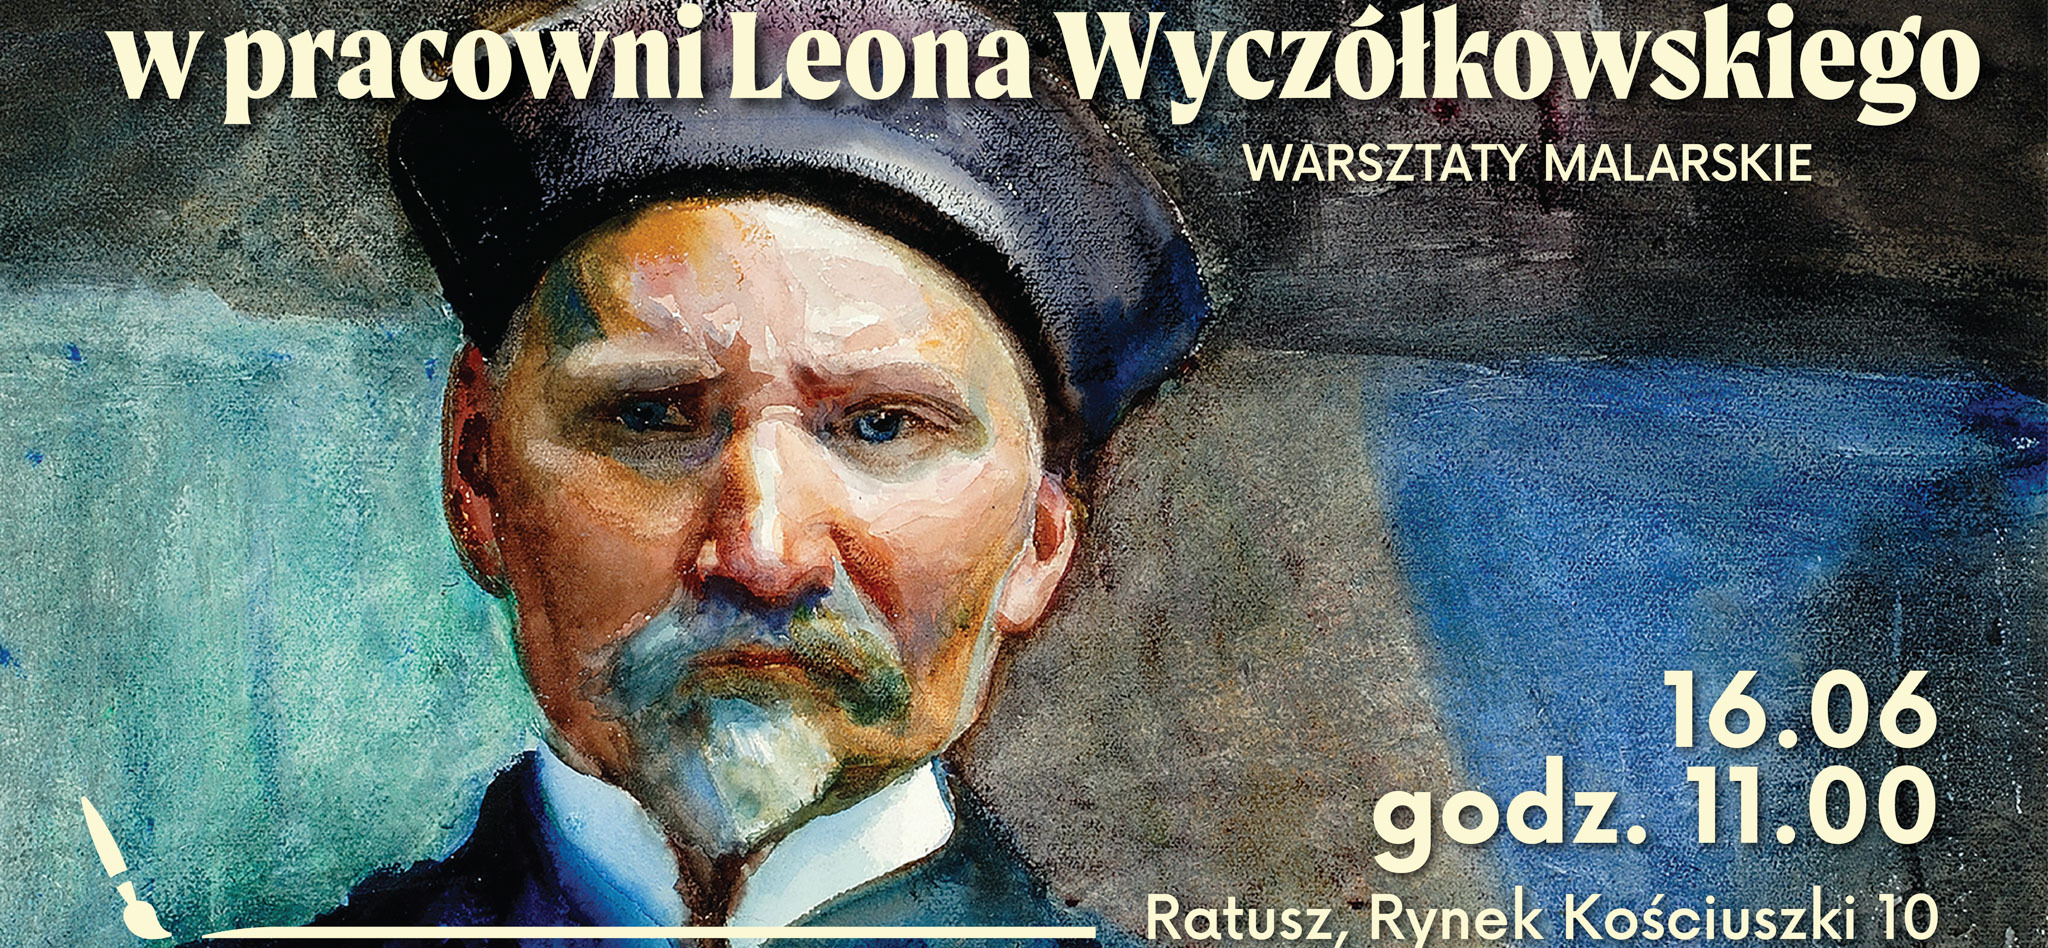 Autoportret Wyczółkowskiego. Po prawej dane dotyczące wydarzenia.